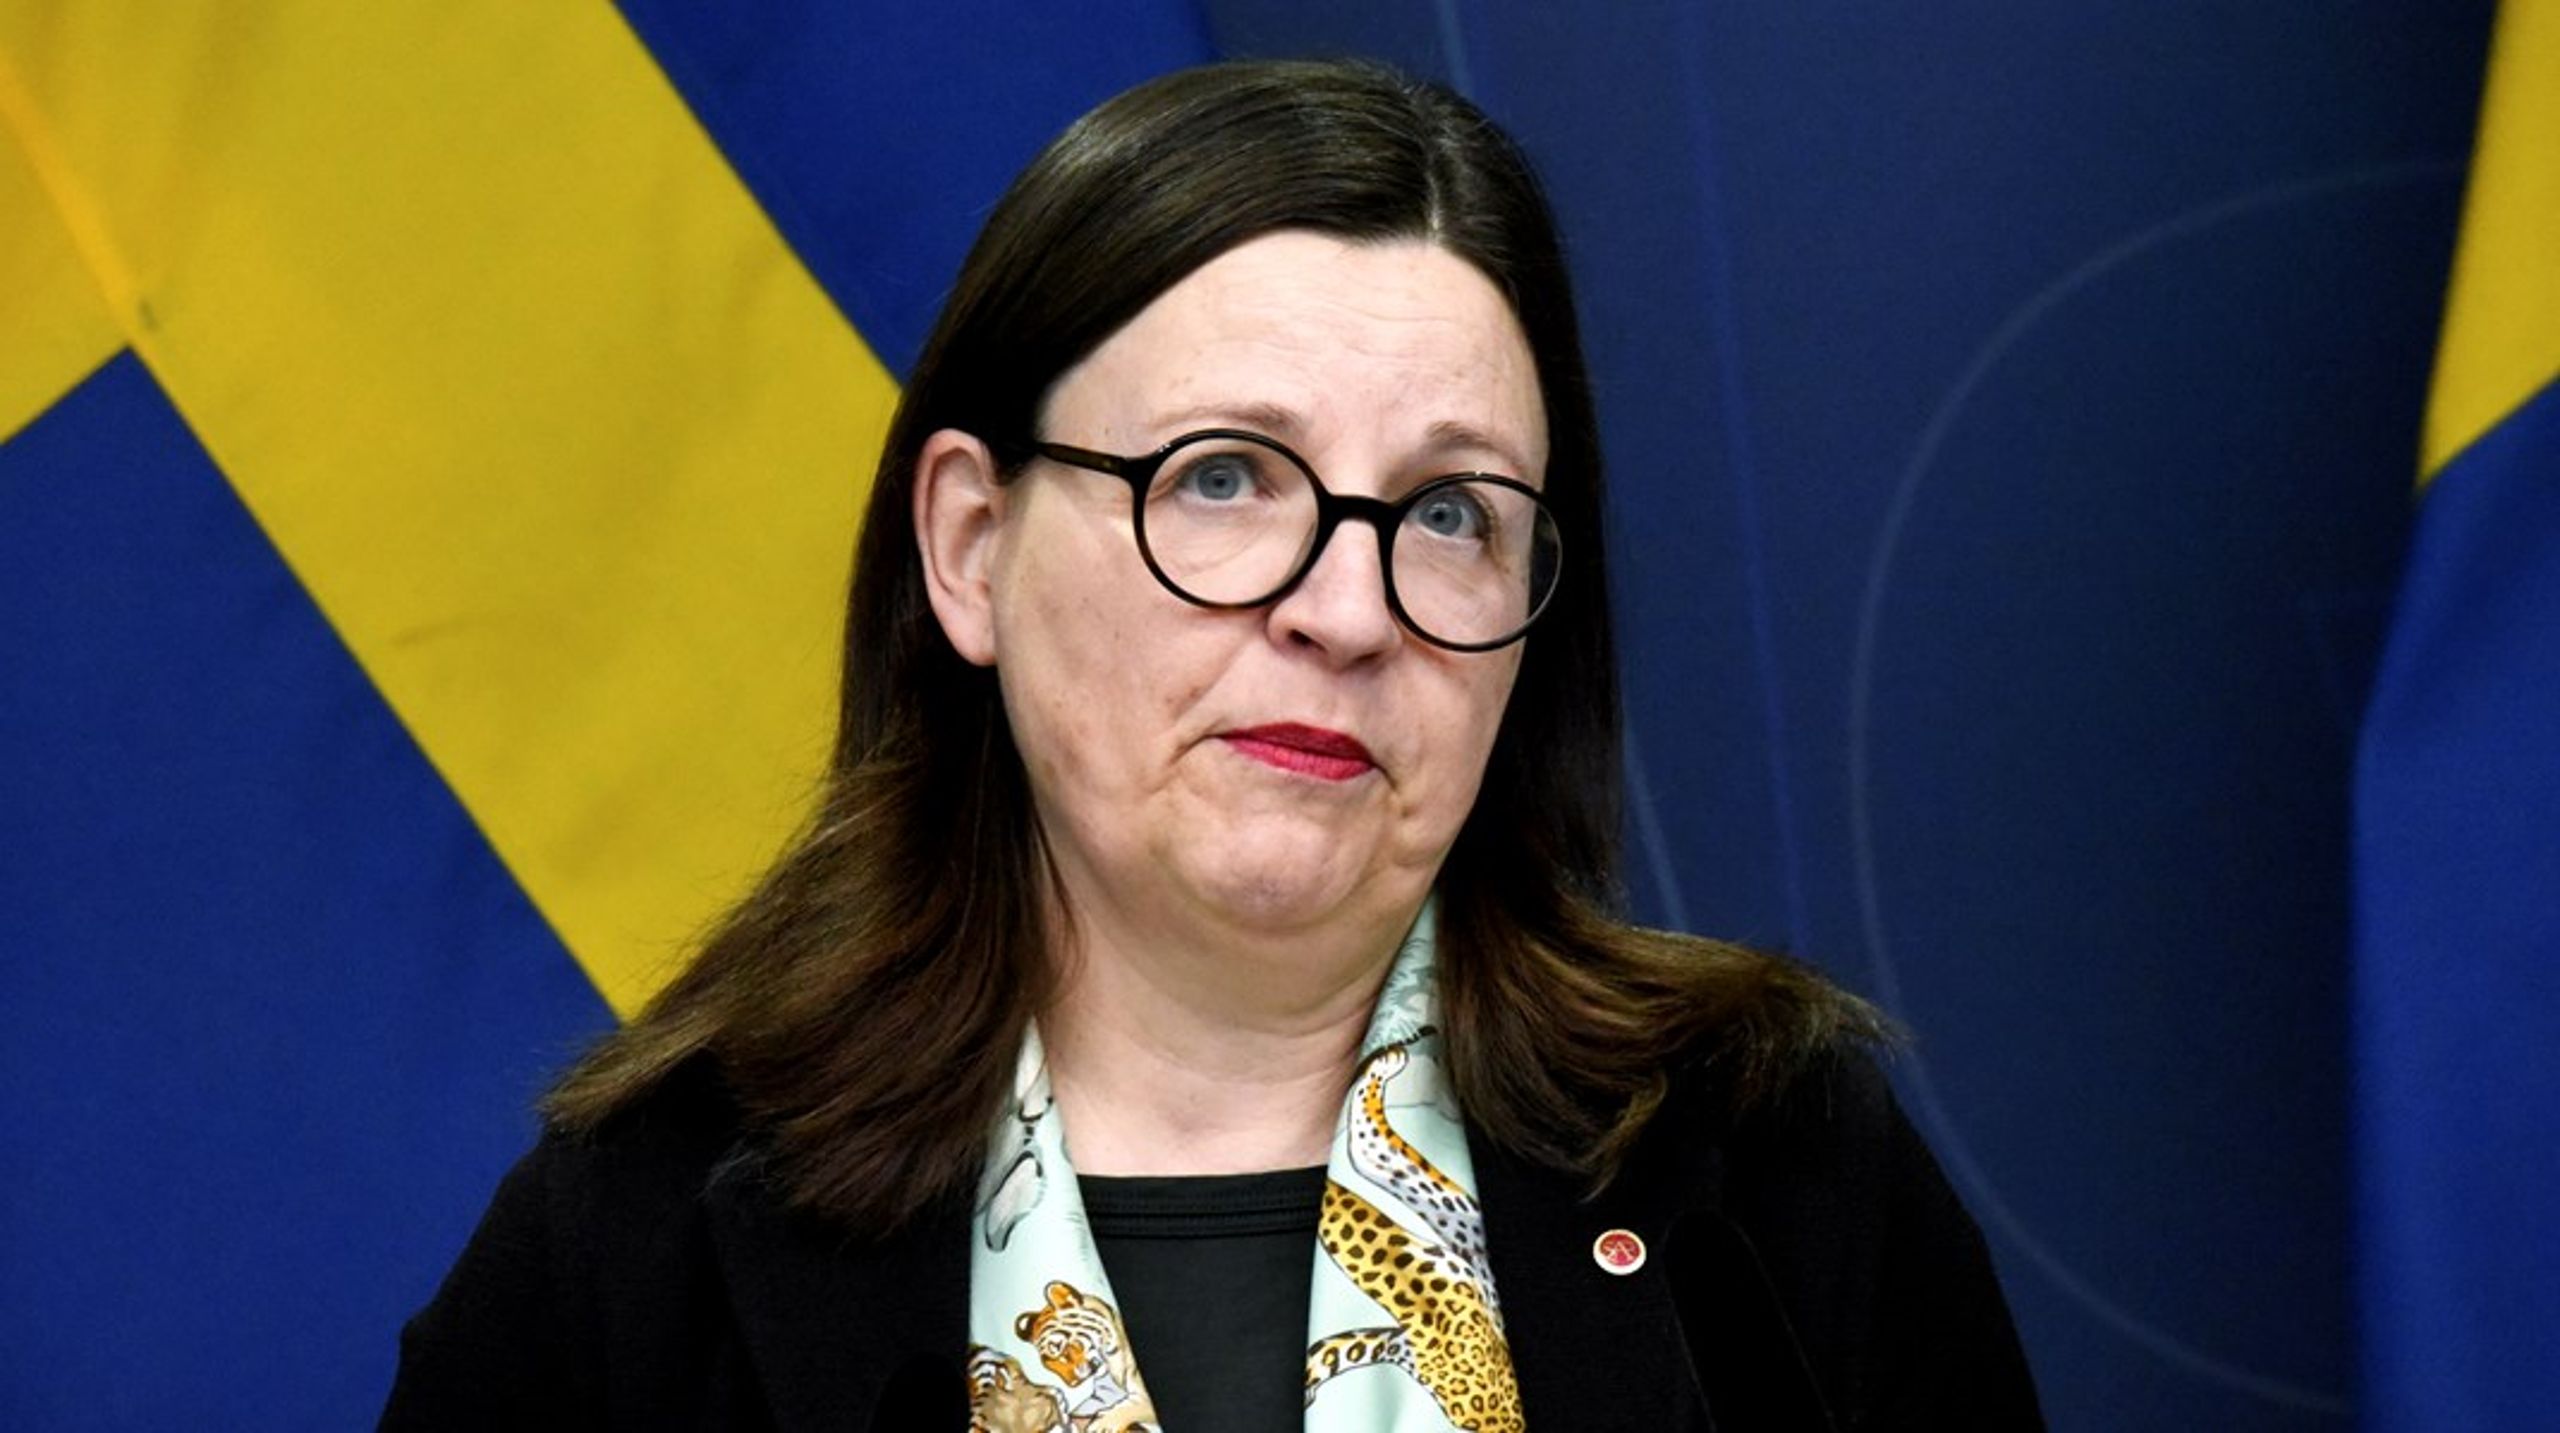 ”Utbildningsminister Anna Ekström (S), som har ansvar för högre utbildning, har flera gånger valt att lyfta hur gynnsamt Sveriges studiemedel är.”